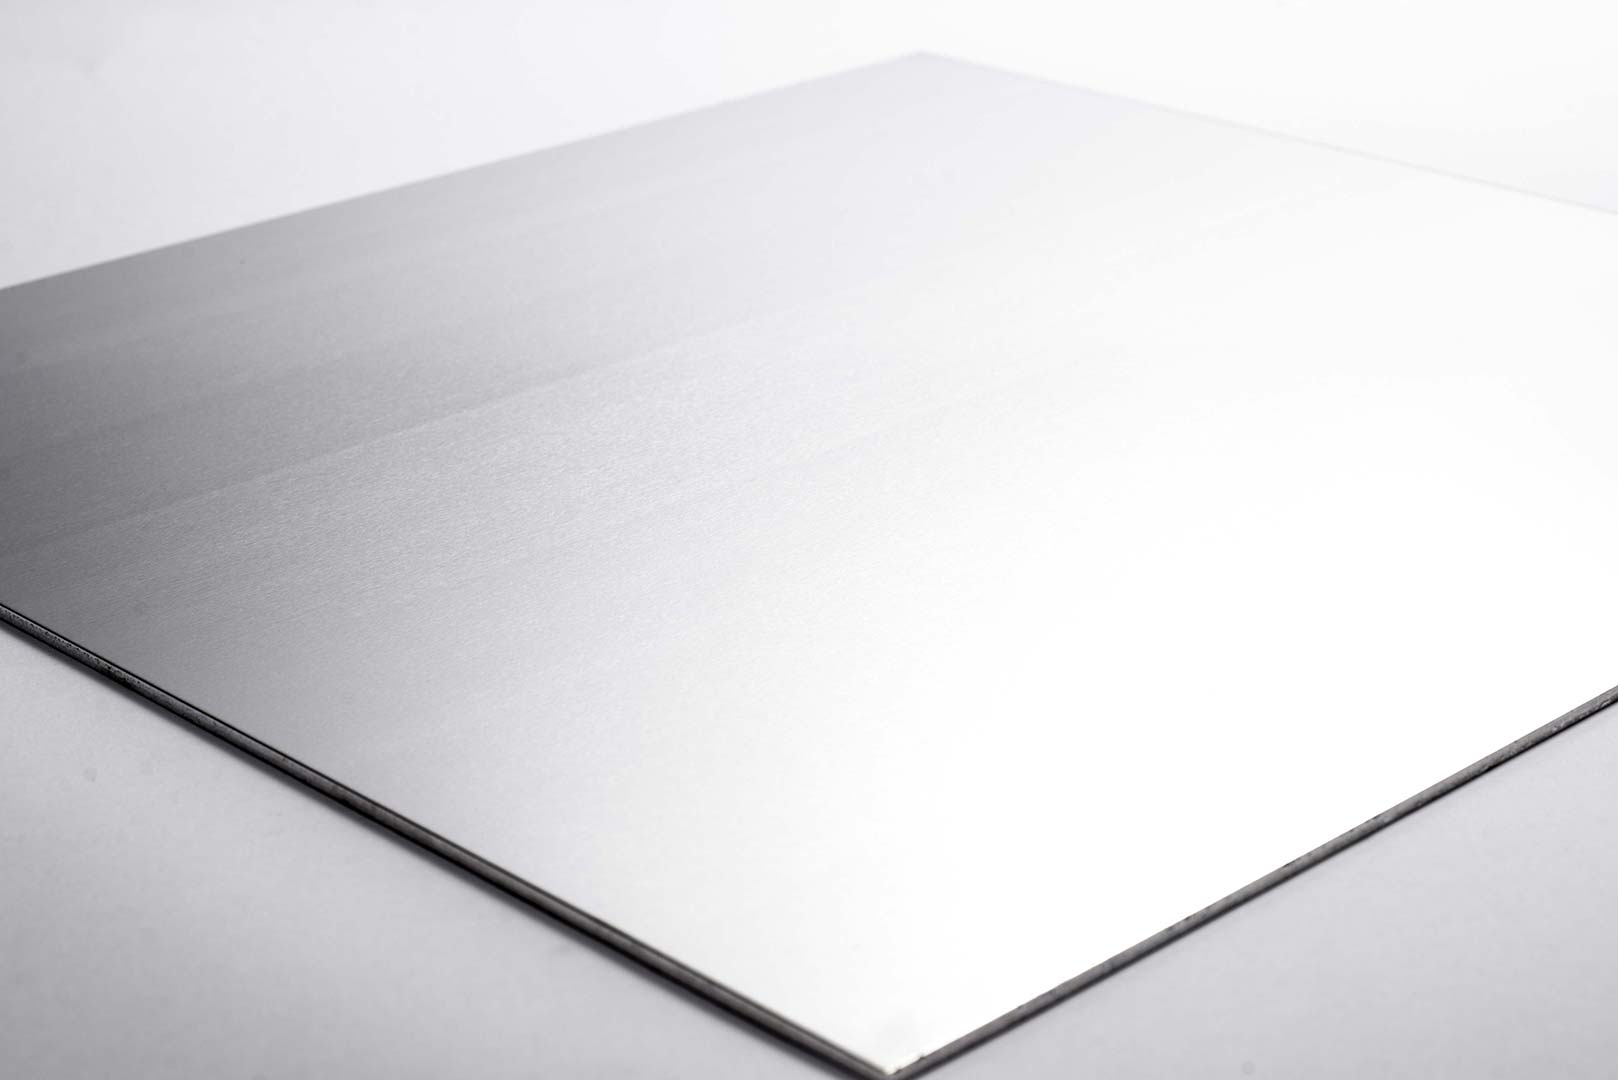 4mm sheet aluminium 500X1000mm Repairs Large Sheet Of Metal 